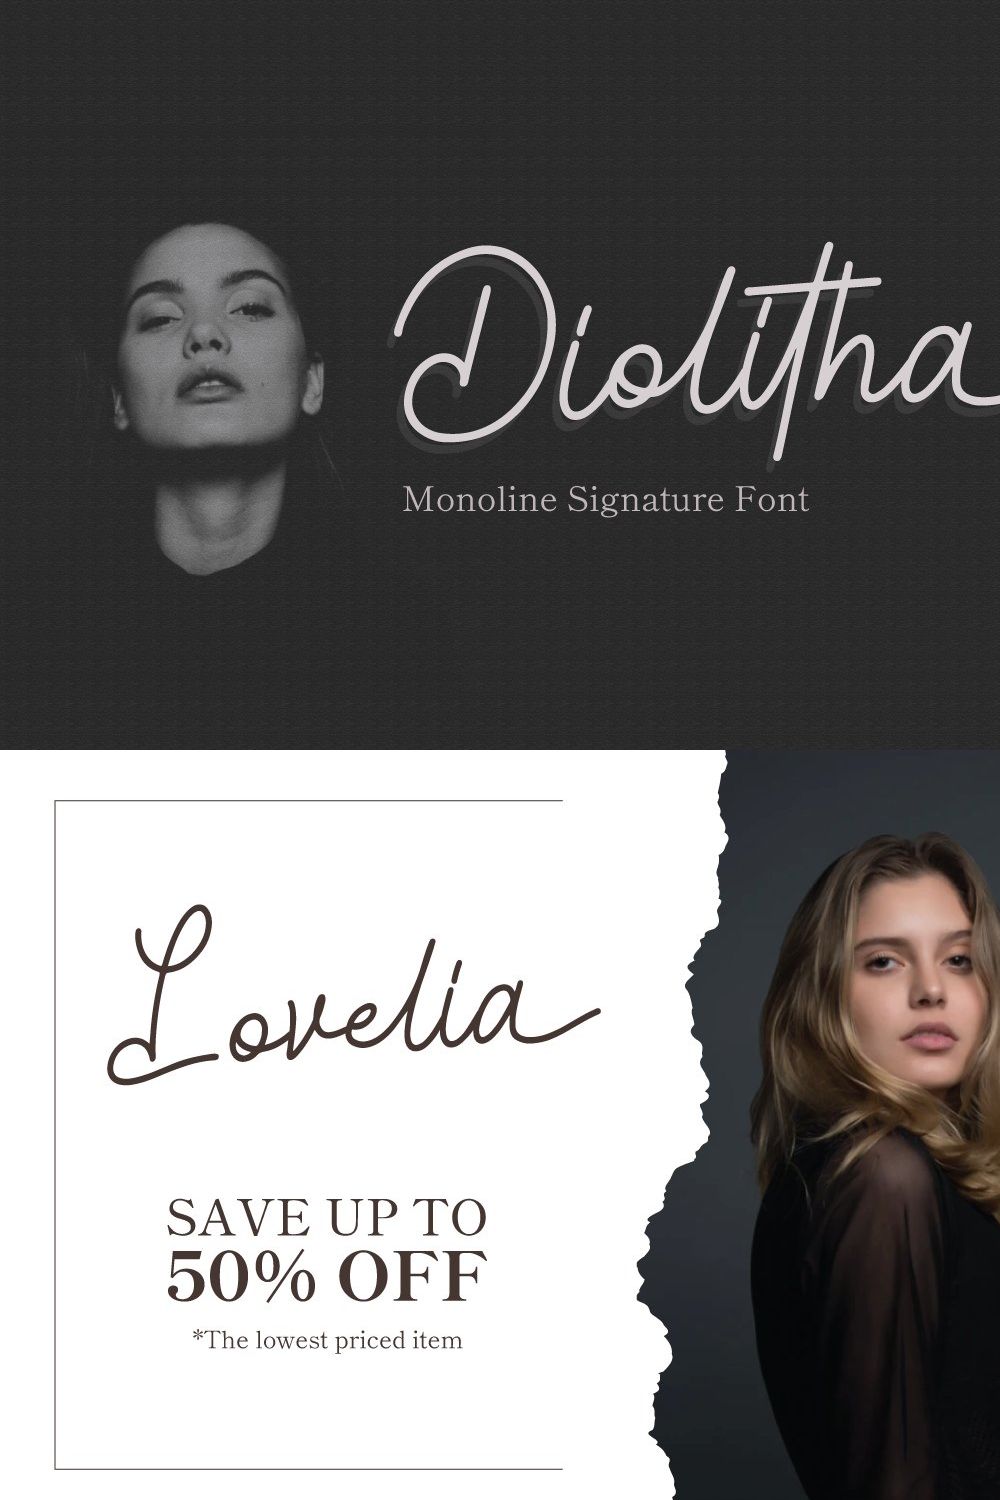 Diolitha - Monoline Signature Font pinterest preview image.